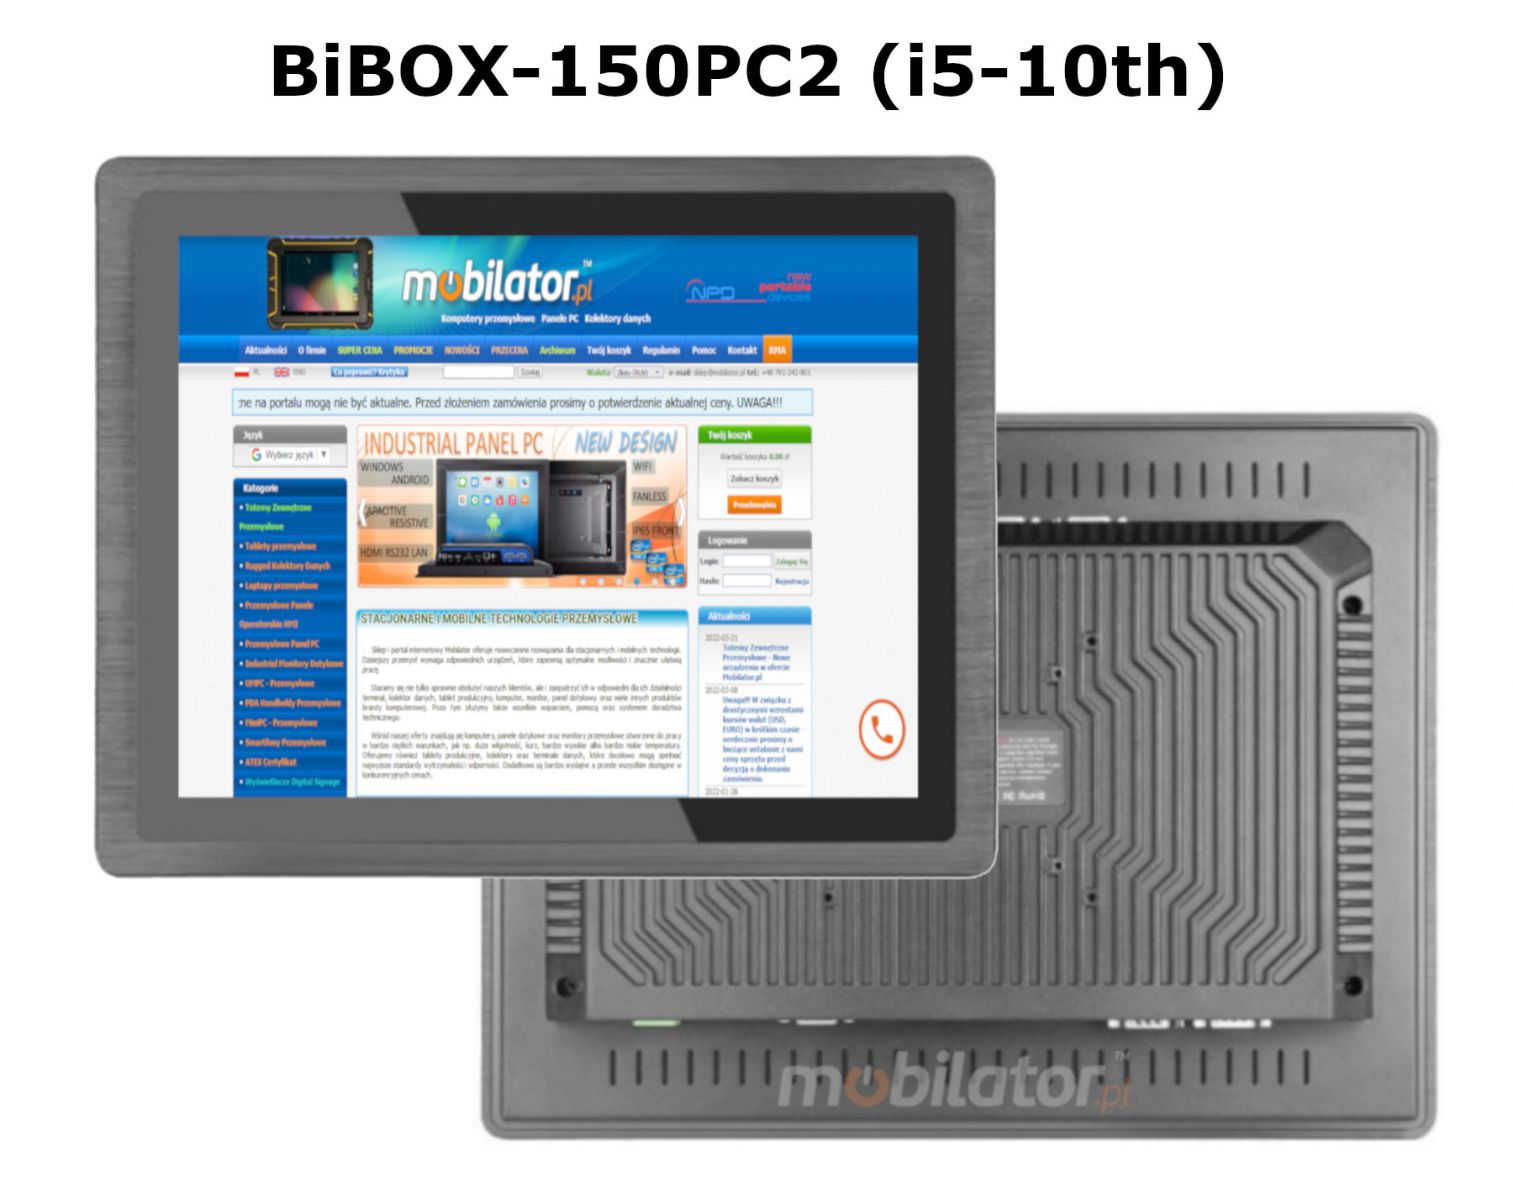 BIBOX-150PC2 odporny wydajny komputer panelowy wraz z WiFi i Bluetooth